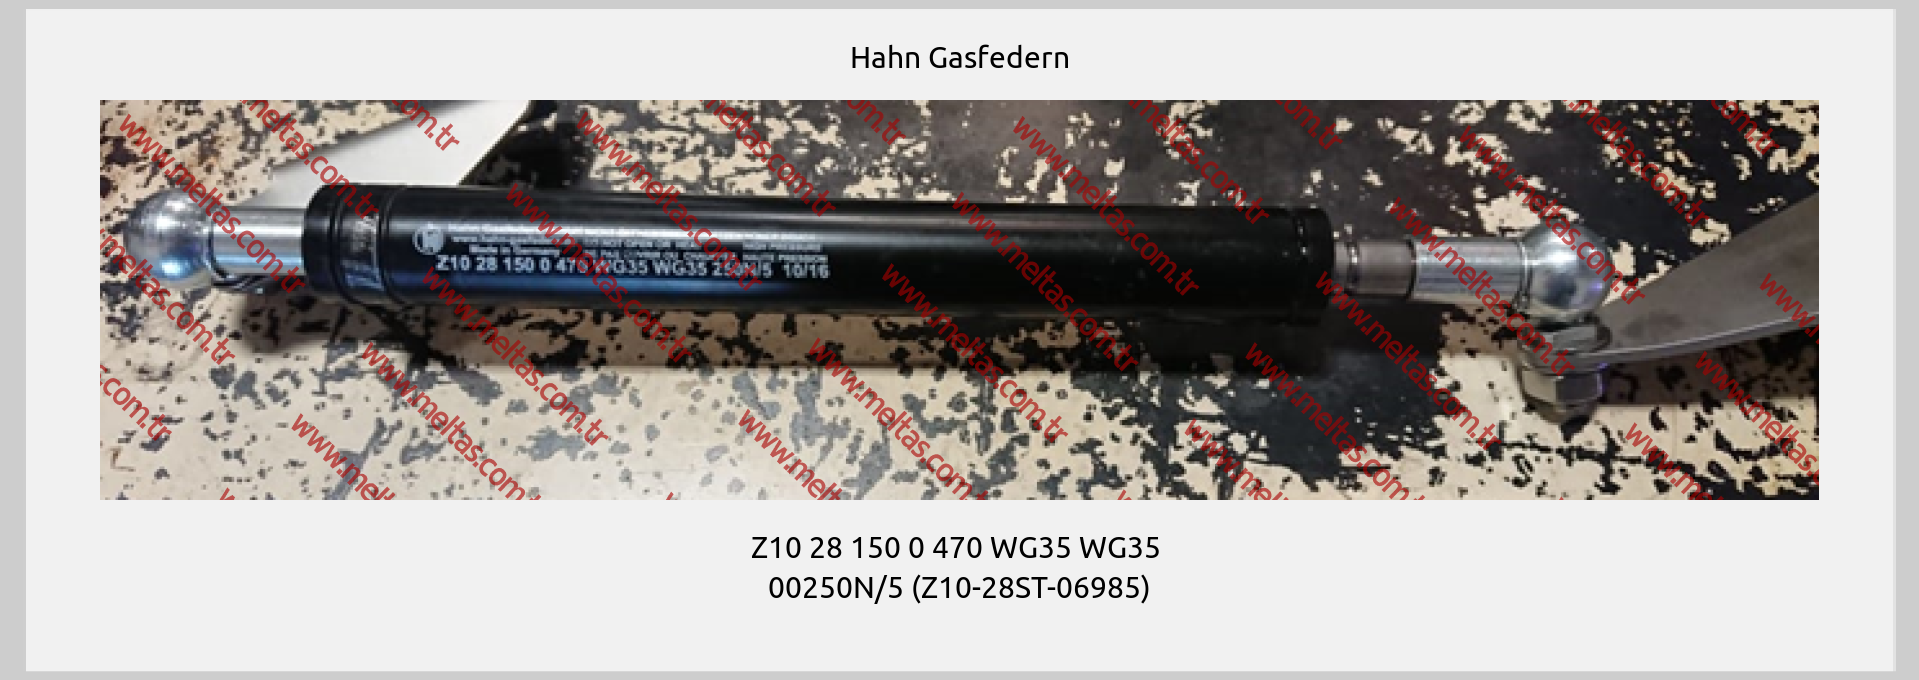 Hahn Gasfedern - Z10 28 150 0 470 WG35 WG35  00250N/5 (Z10-28ST-06985)